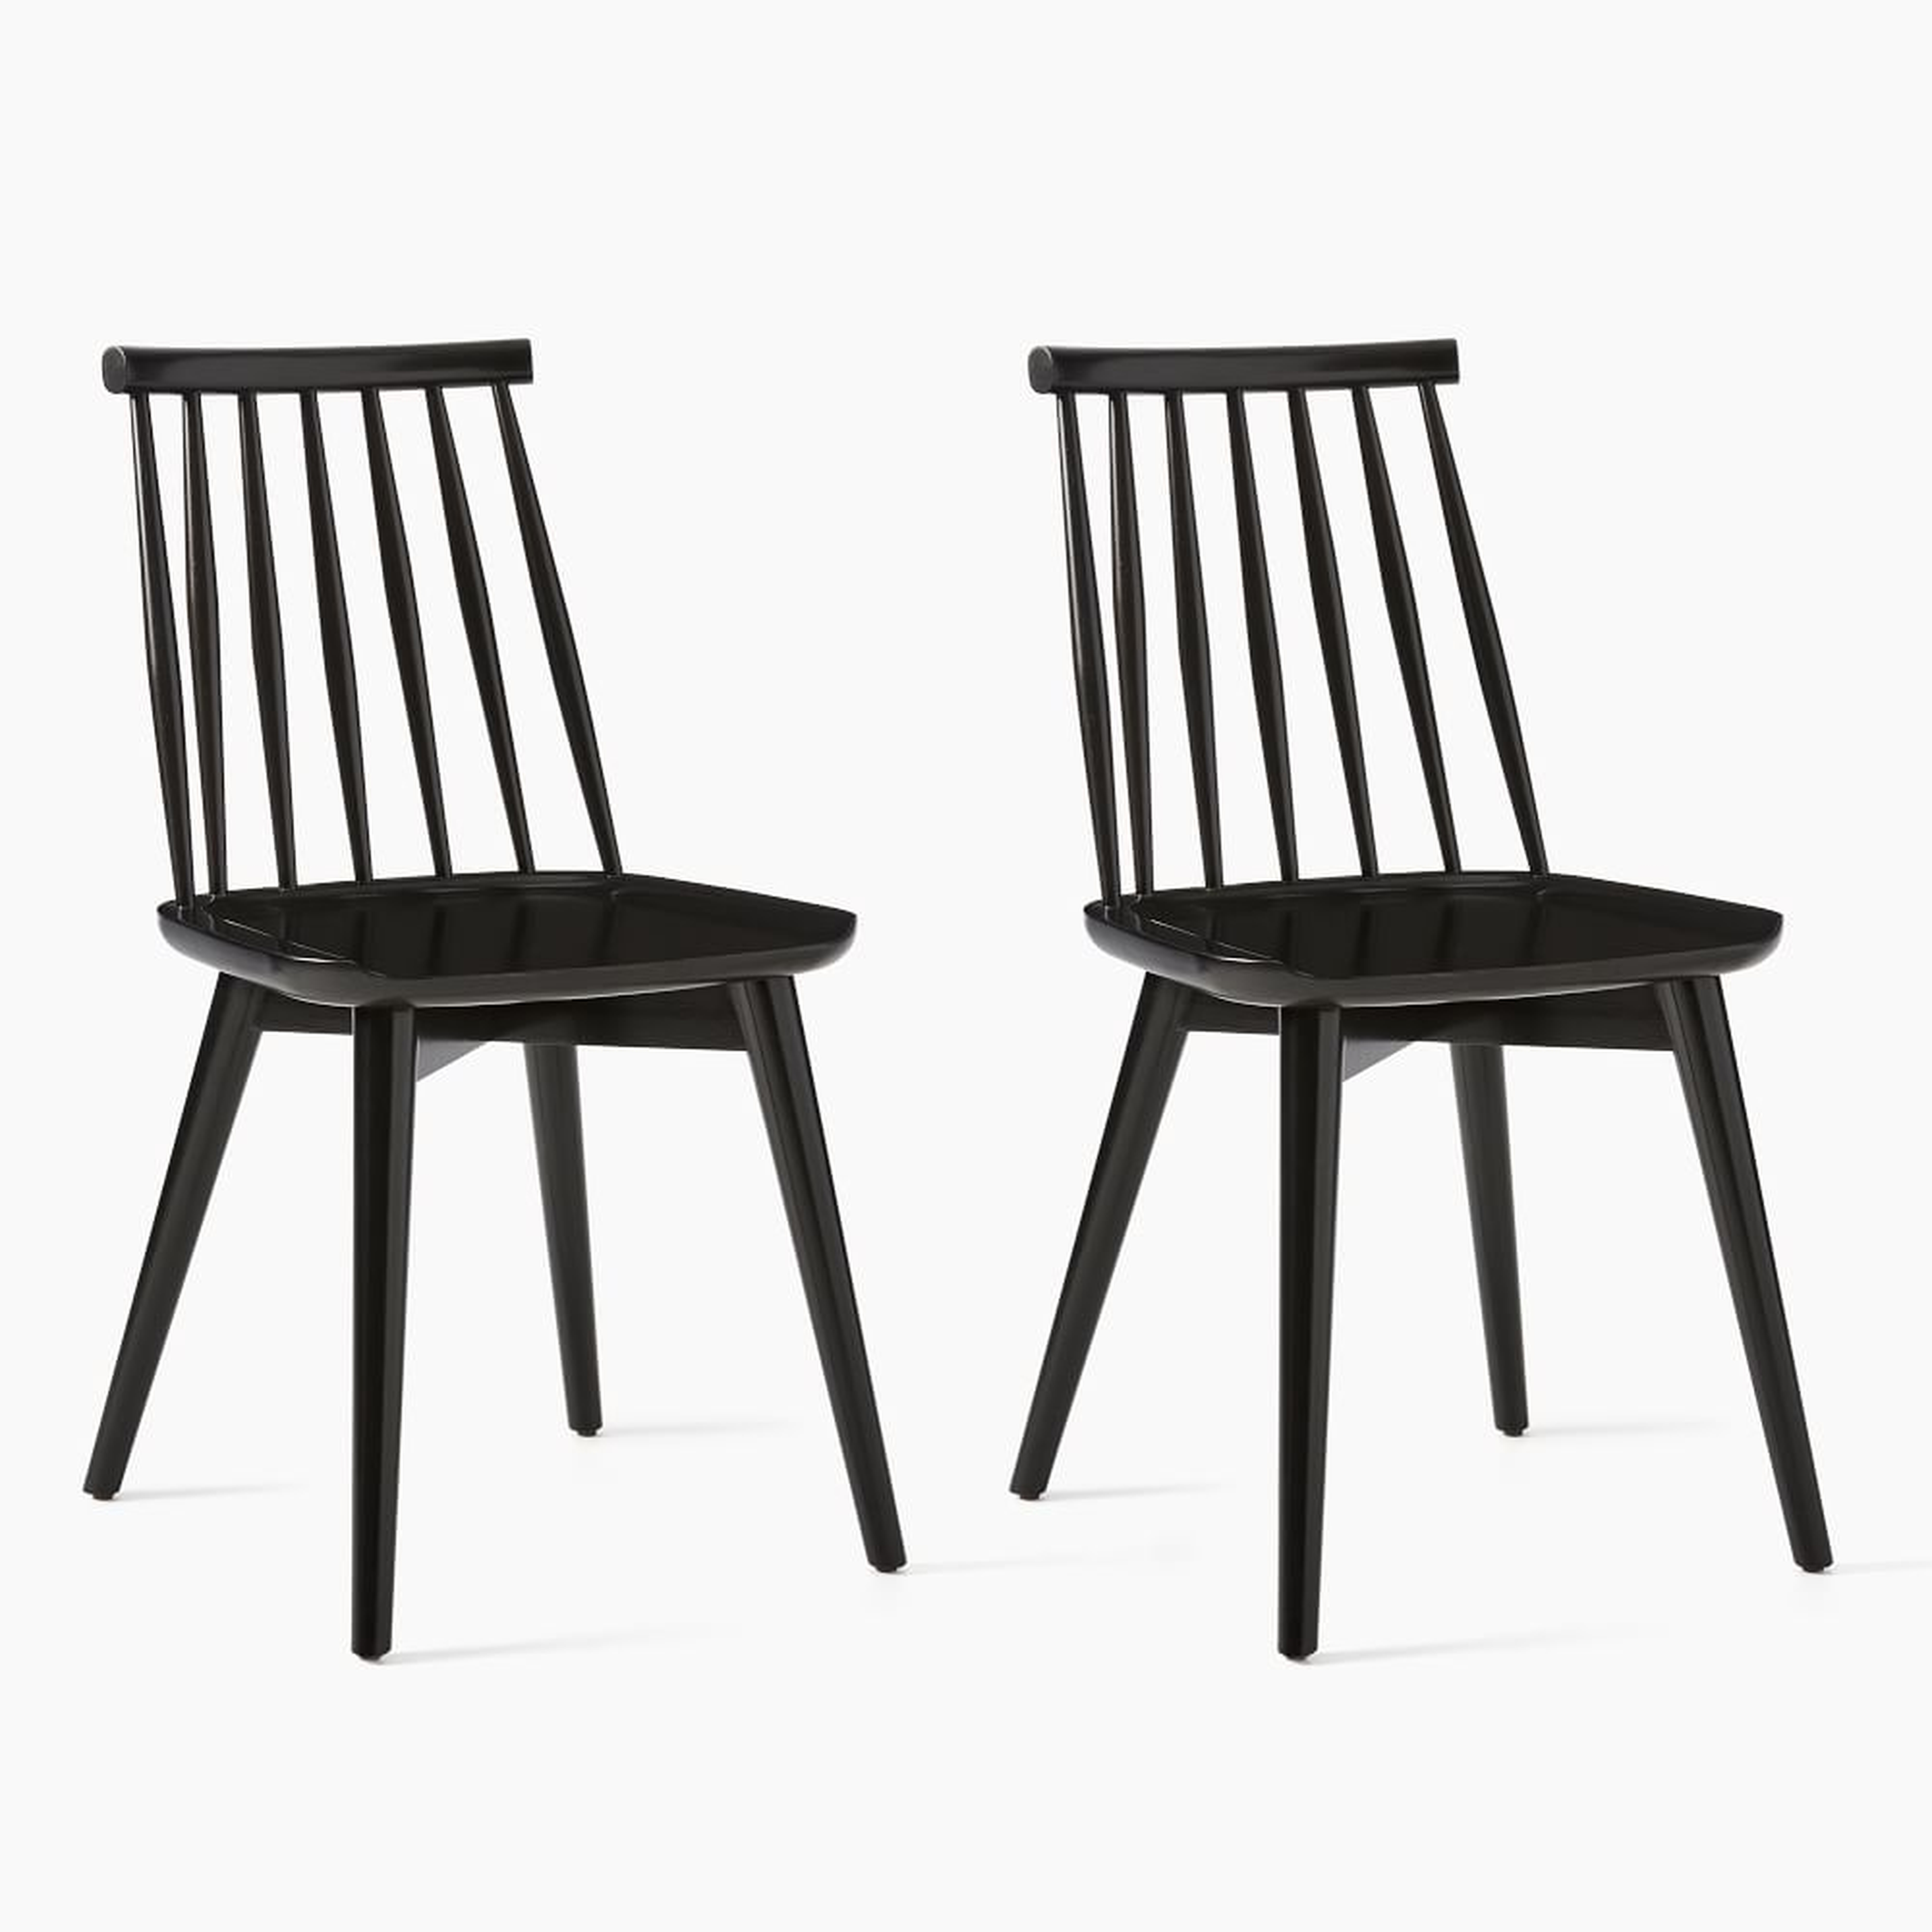 Windsor Dining Chair, Black, Set of 2 - West Elm